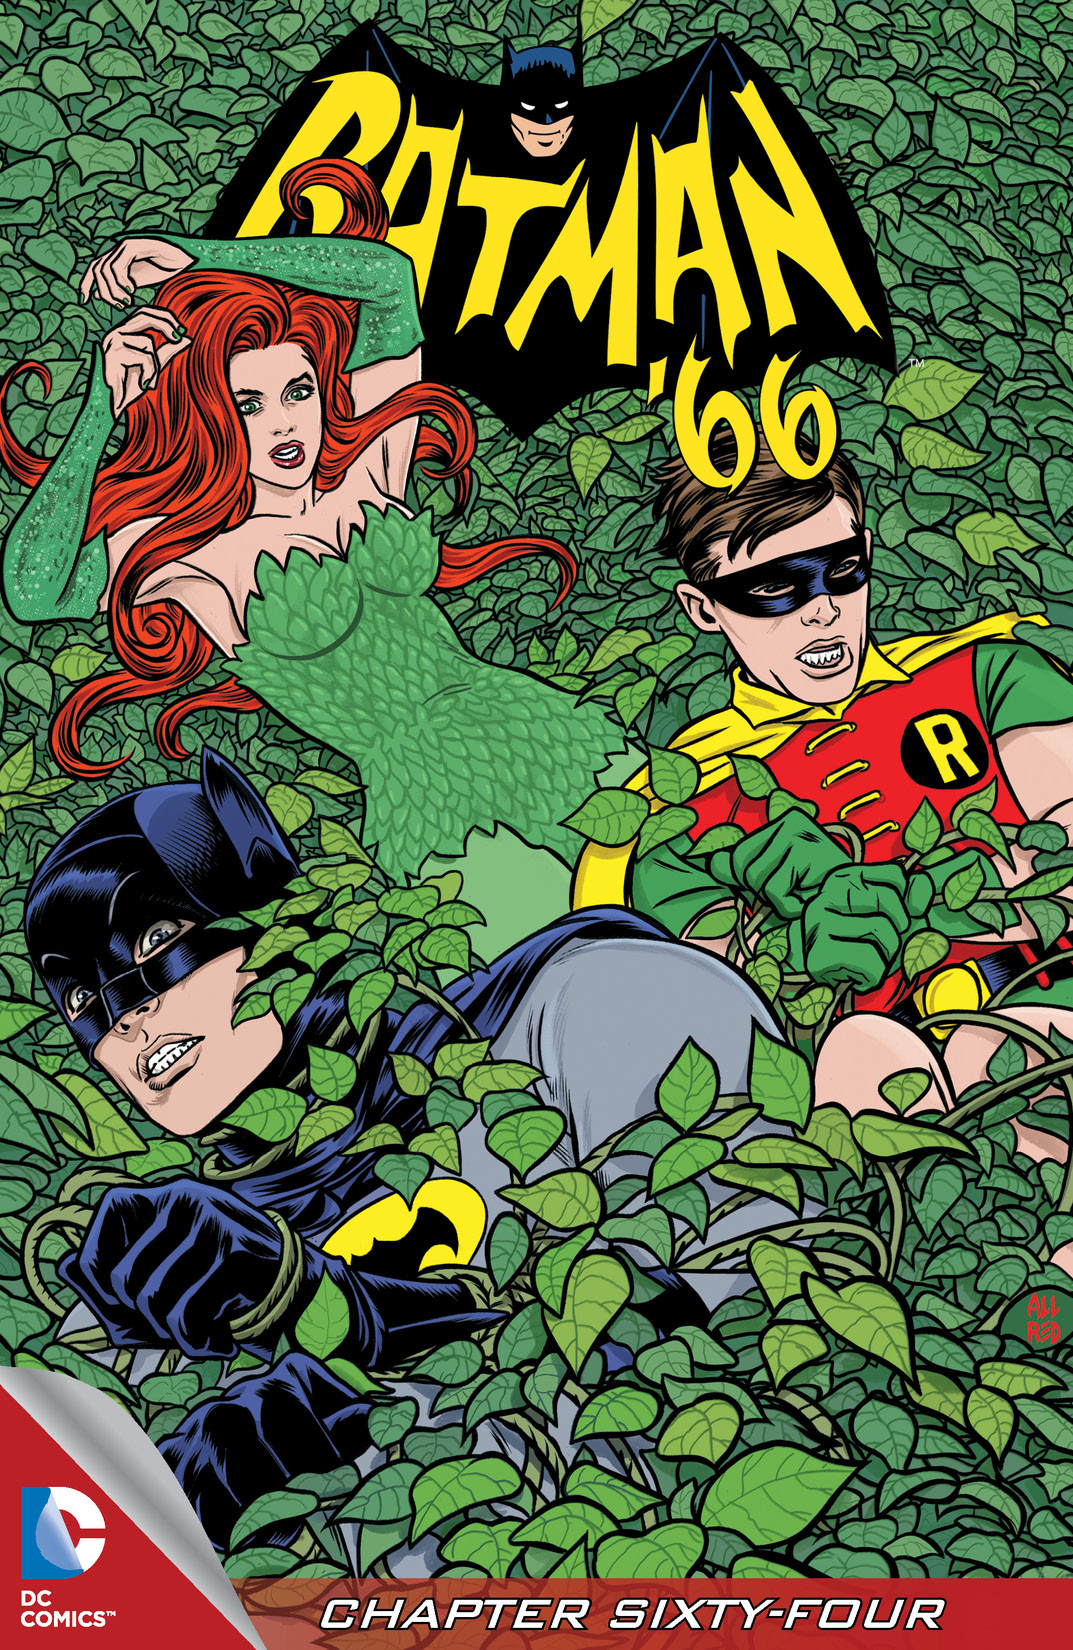 Batman '66 #64 preview images